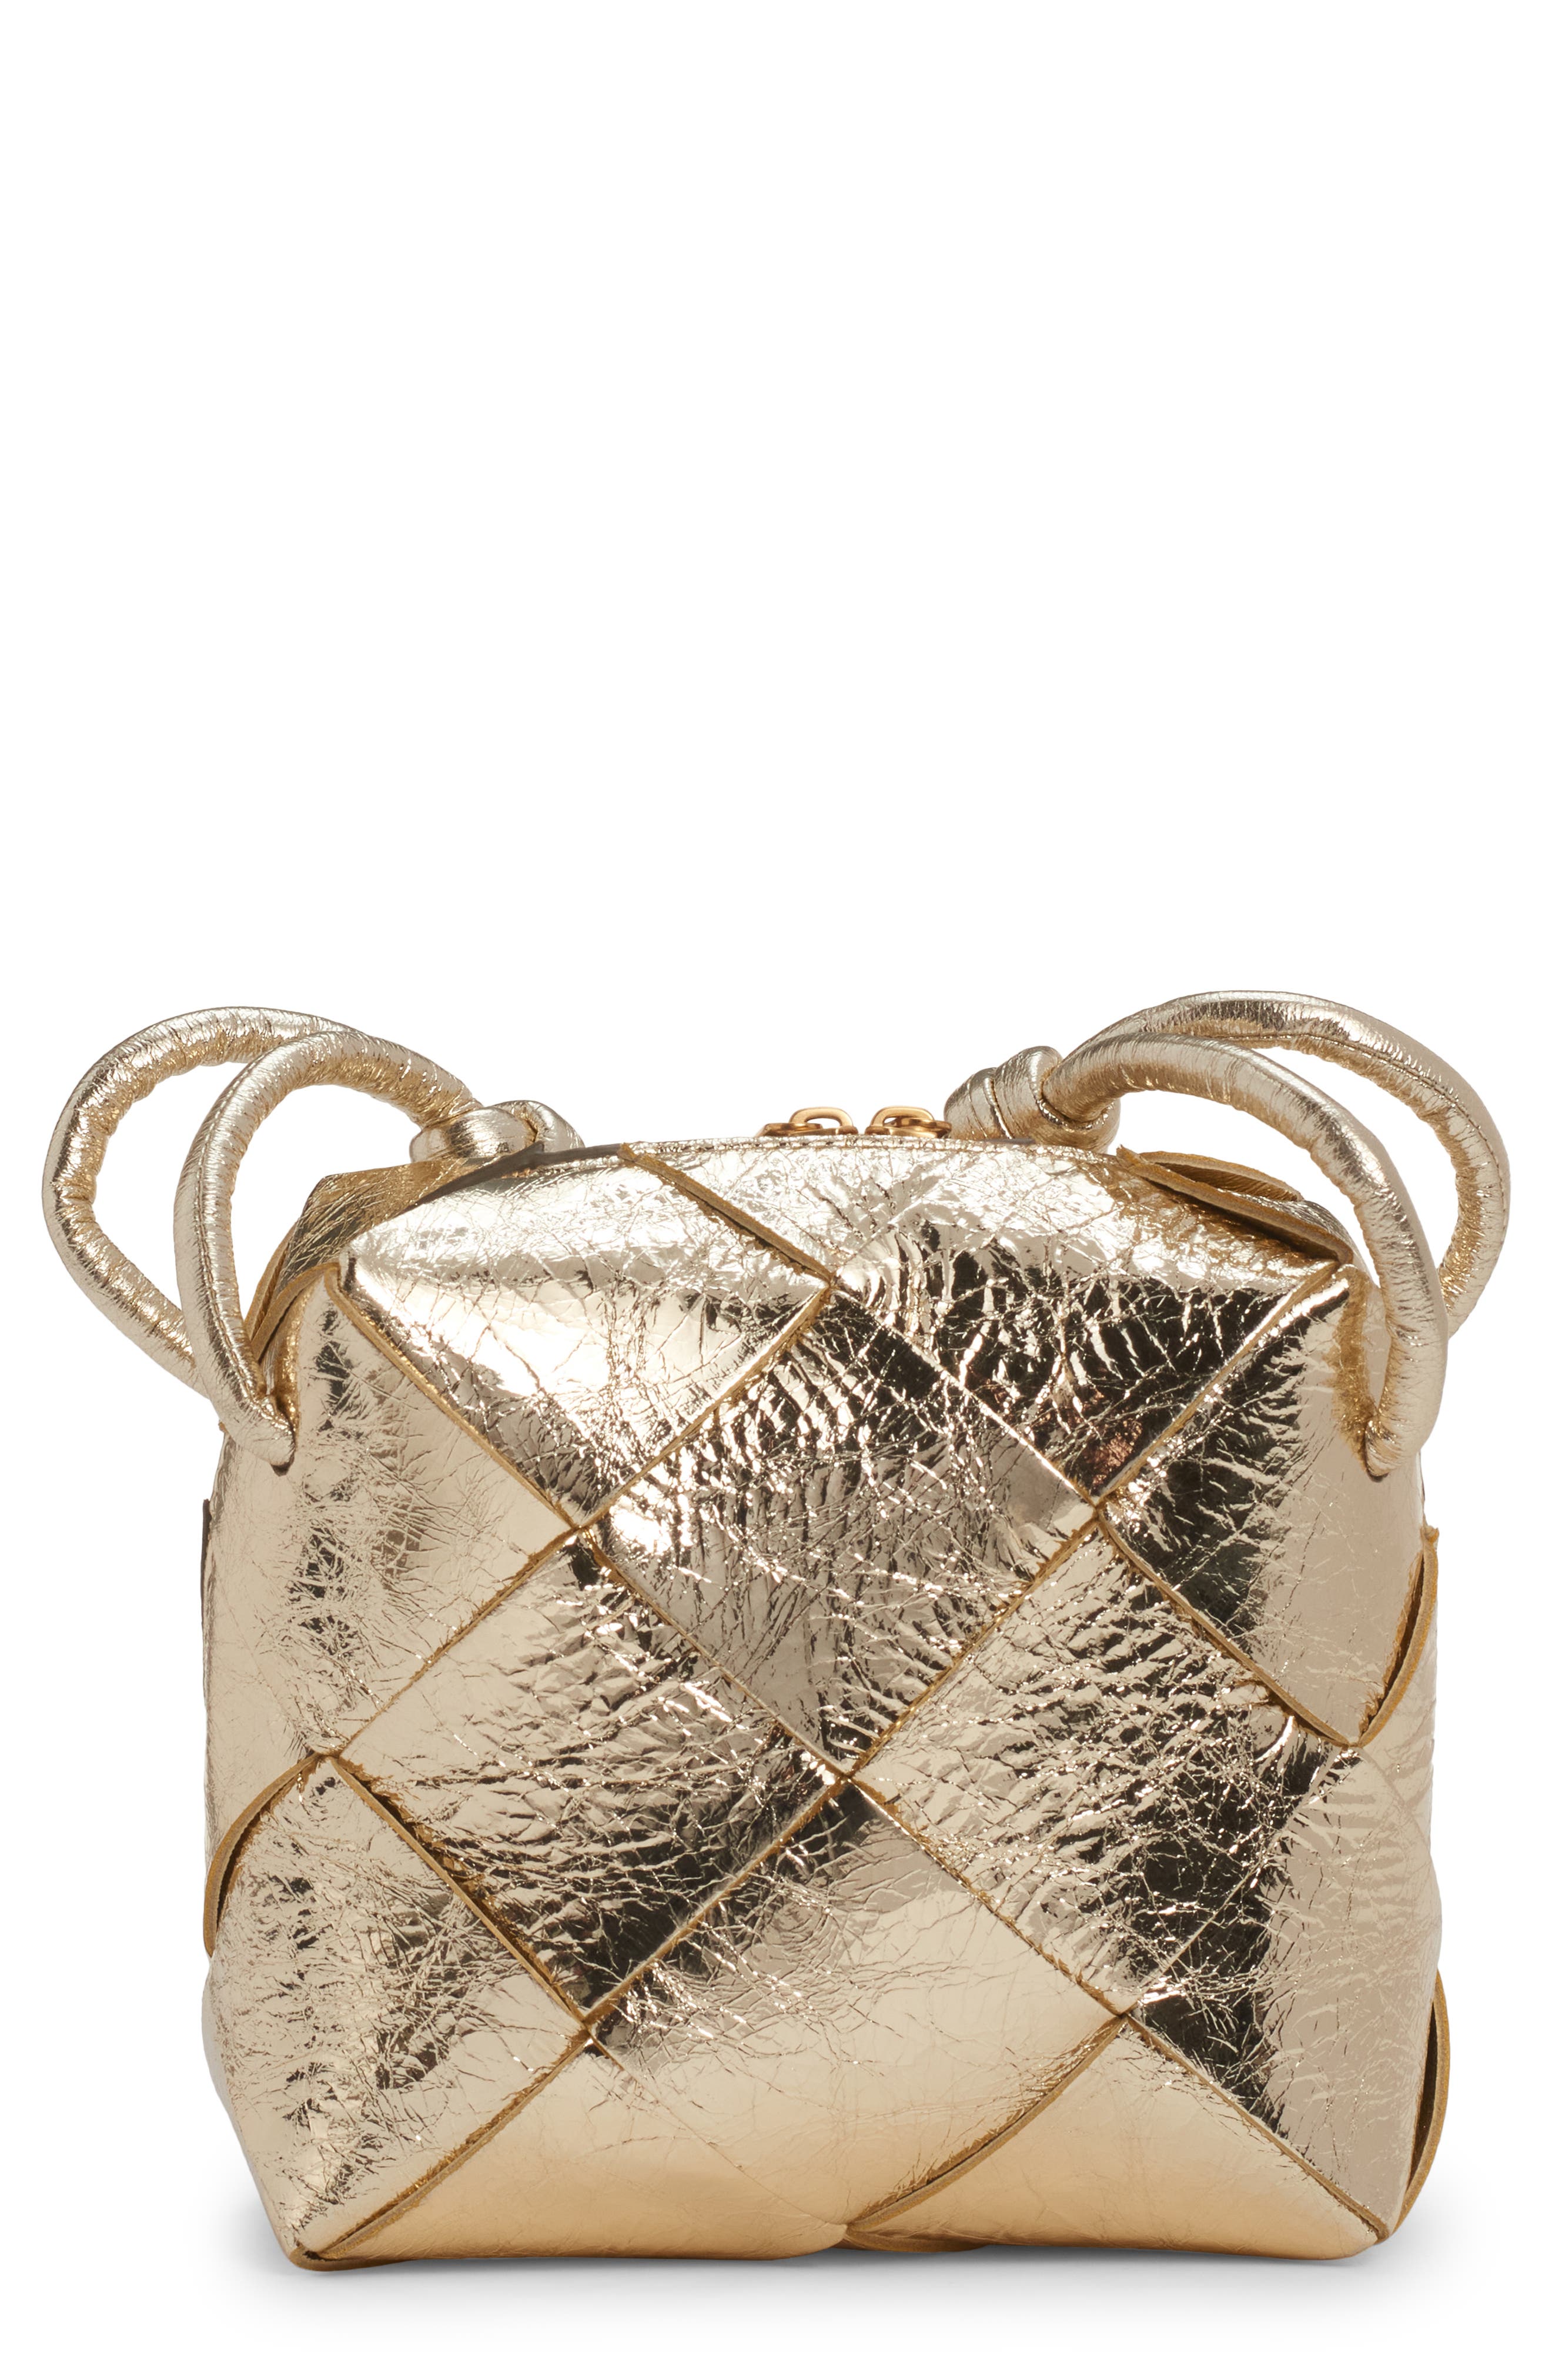 Bottega Veneta Small Clicker Intreccio Leather Shoulder Bag in Supermoon/ Gold